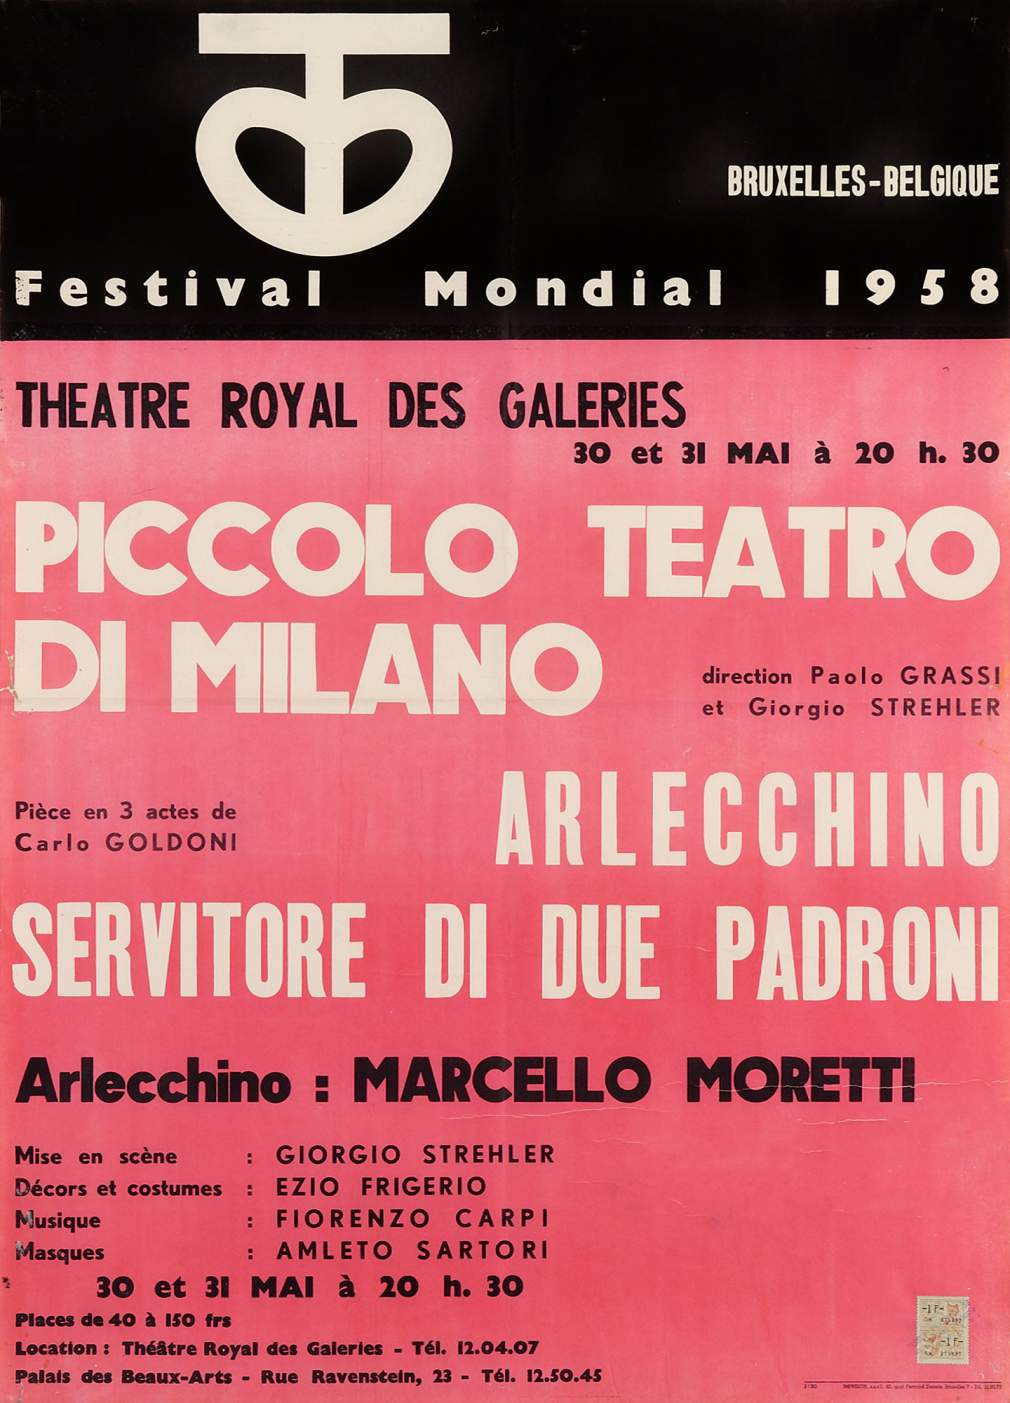 Bruxelles, 30 maggio 1958 - Archivio Piccolo Teatro di Milano